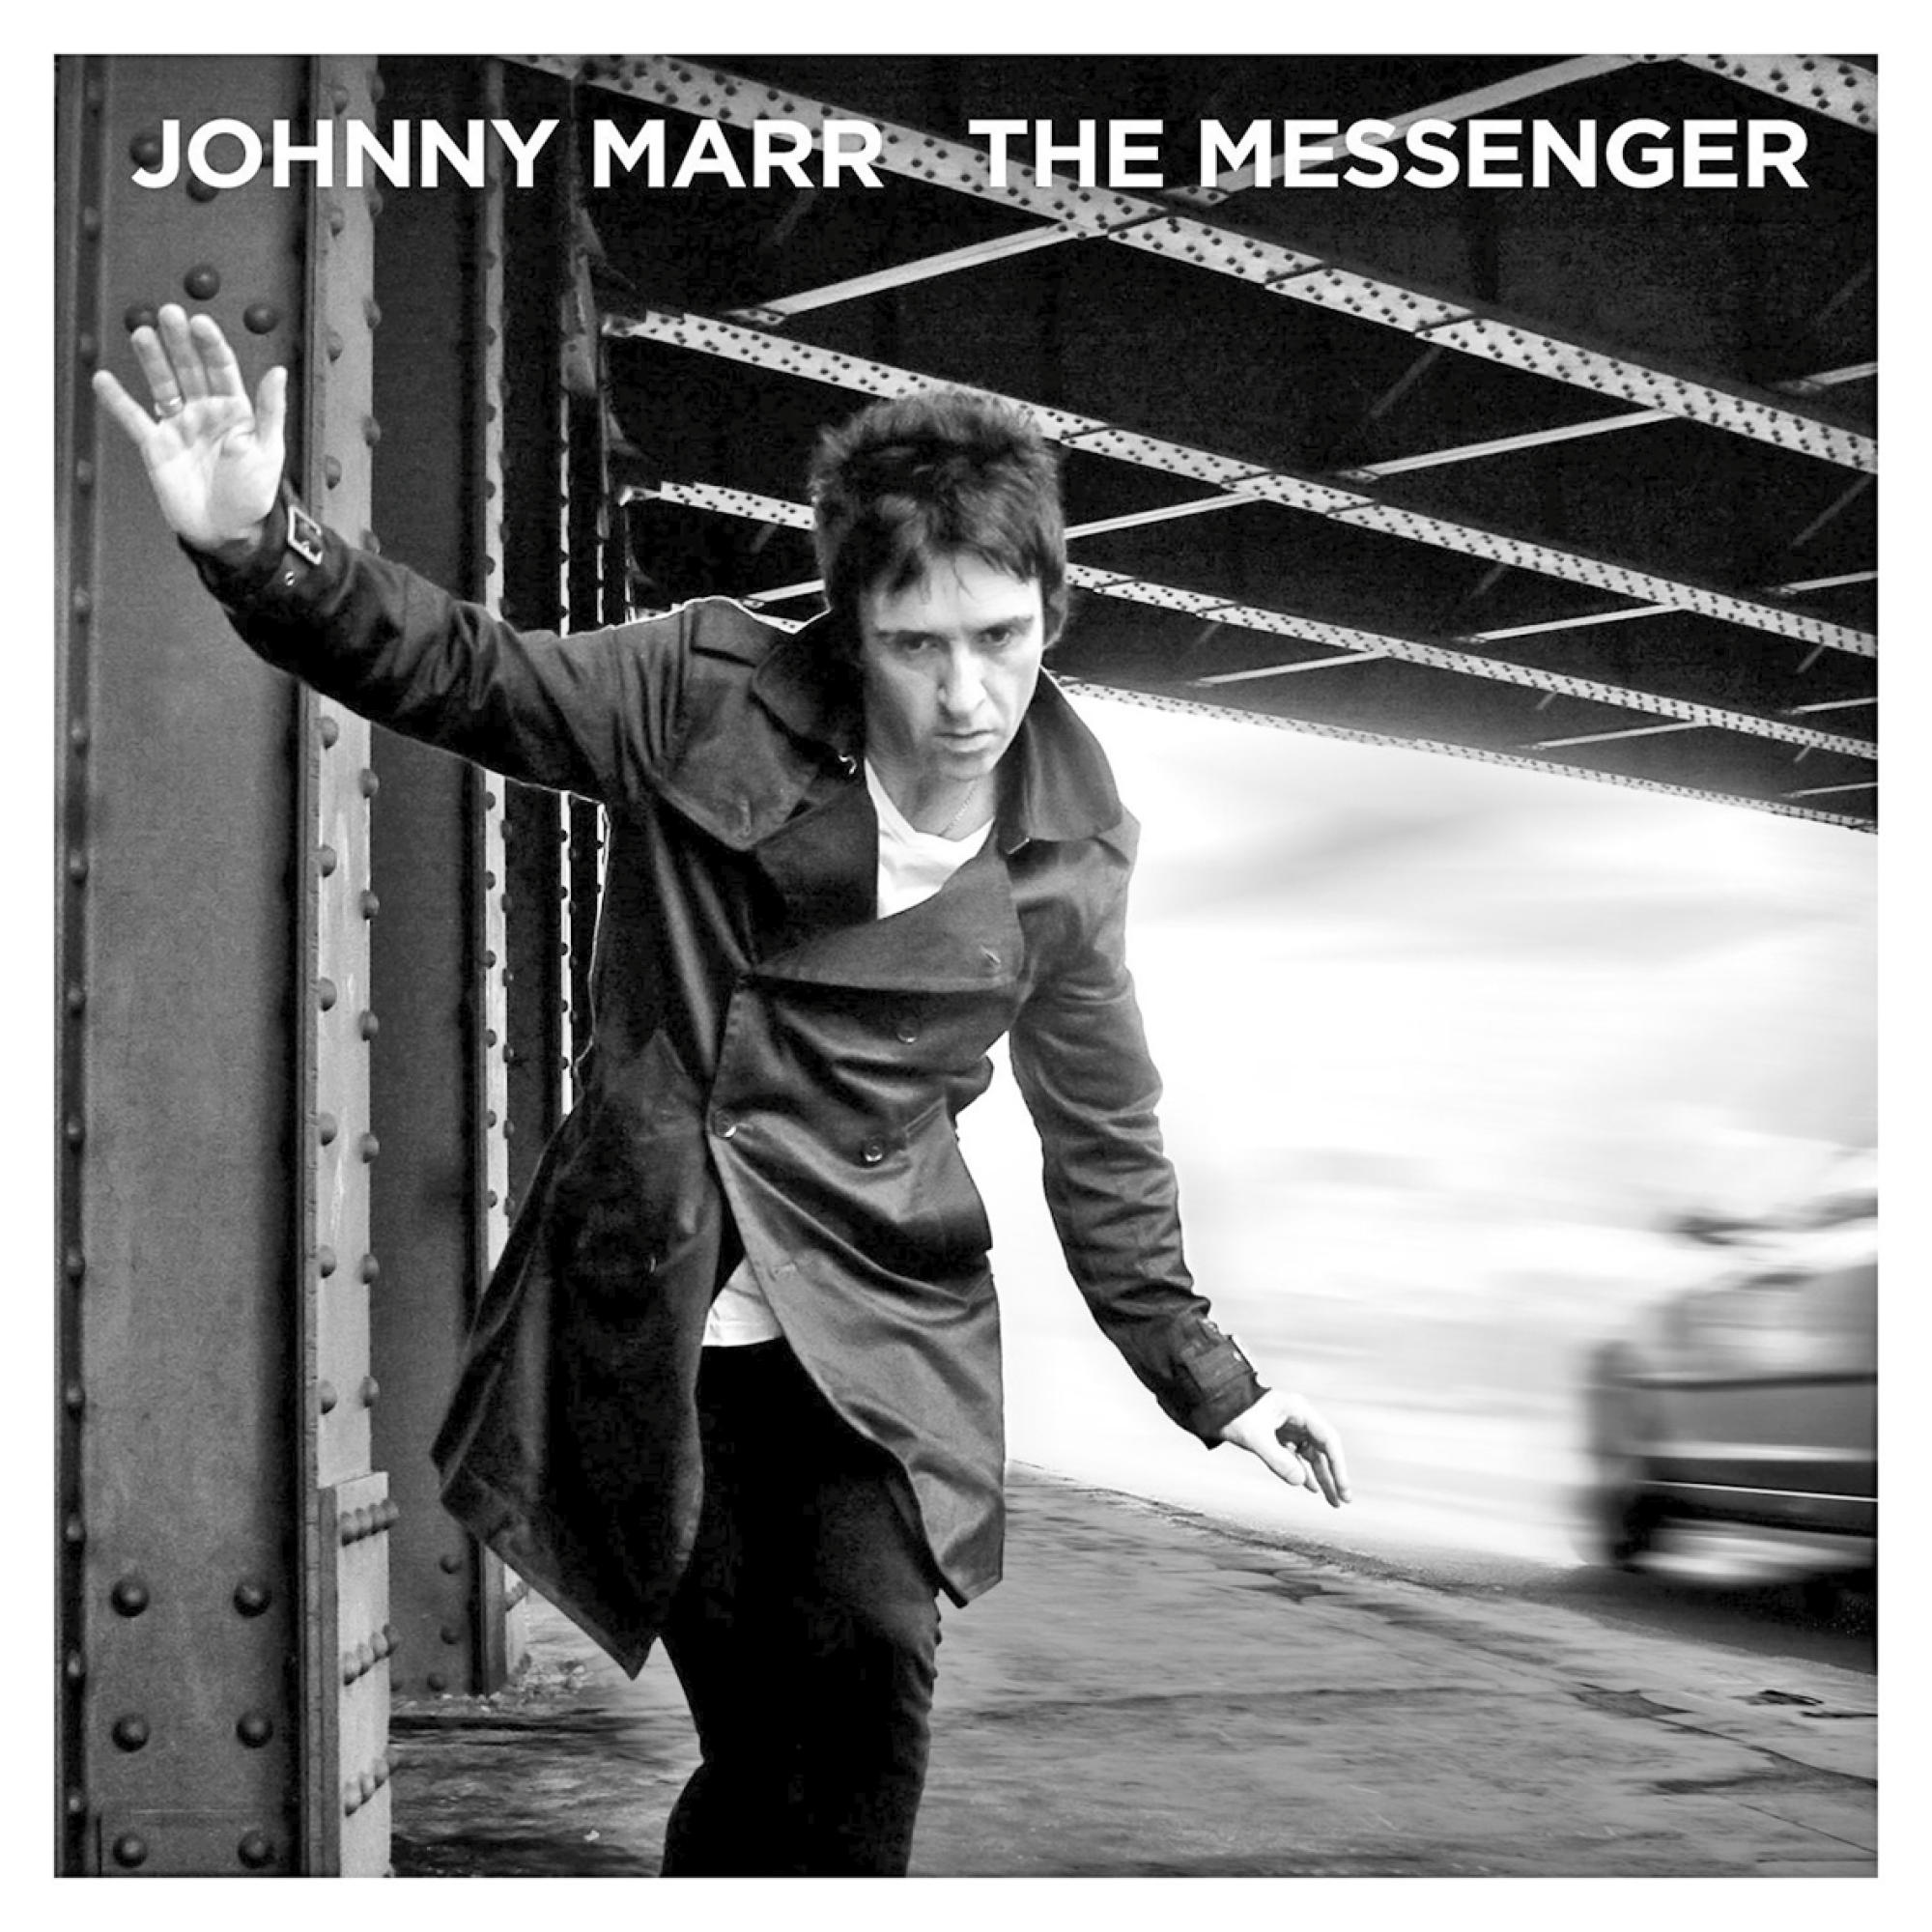 Marr - Johnny The (CD) Messenger -